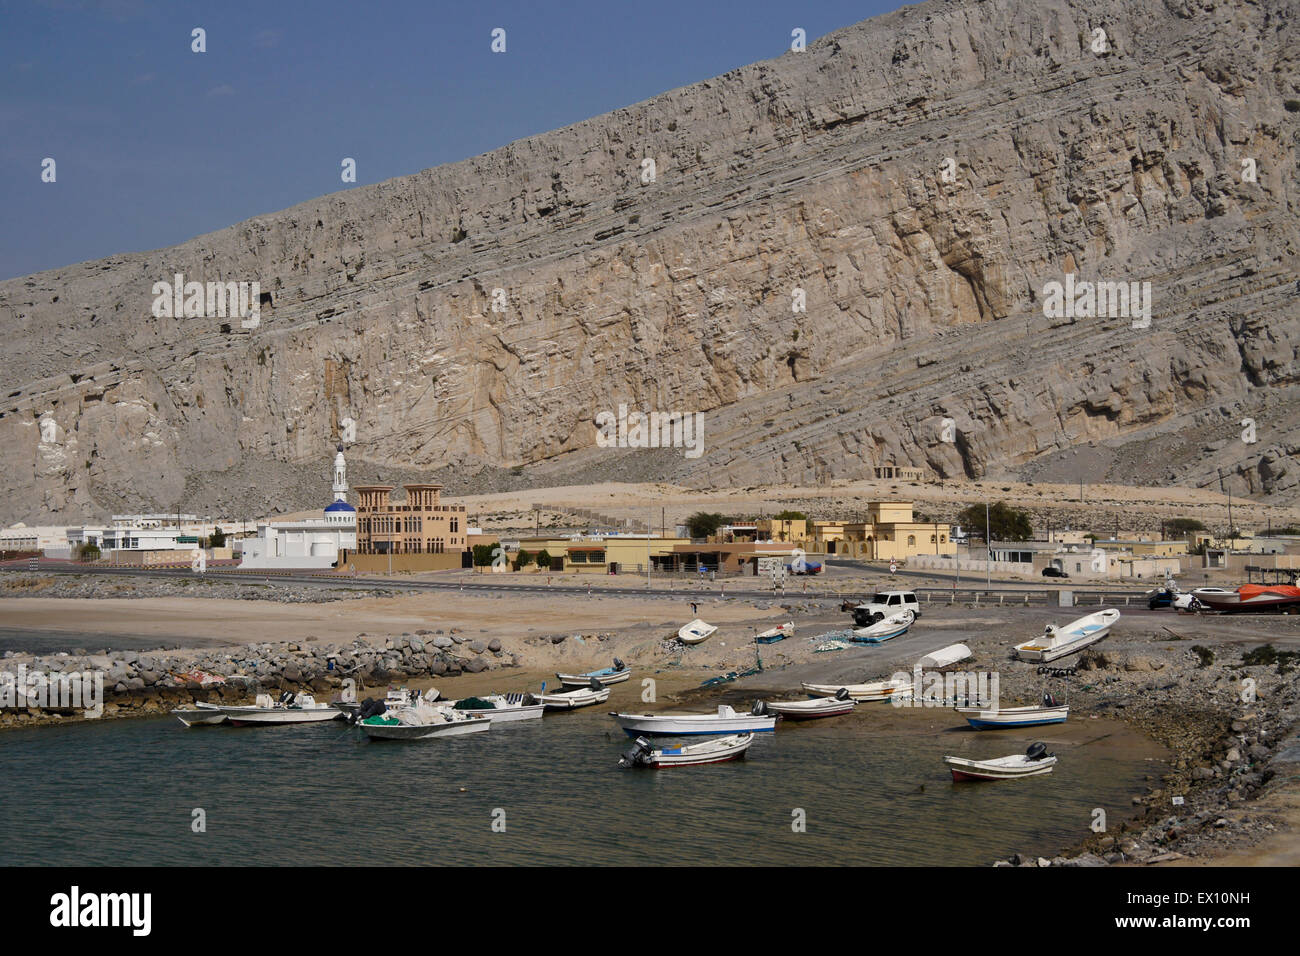 Rocky landscape and village with fishing boats, Musandam Peninsula, Oman Stock Photo